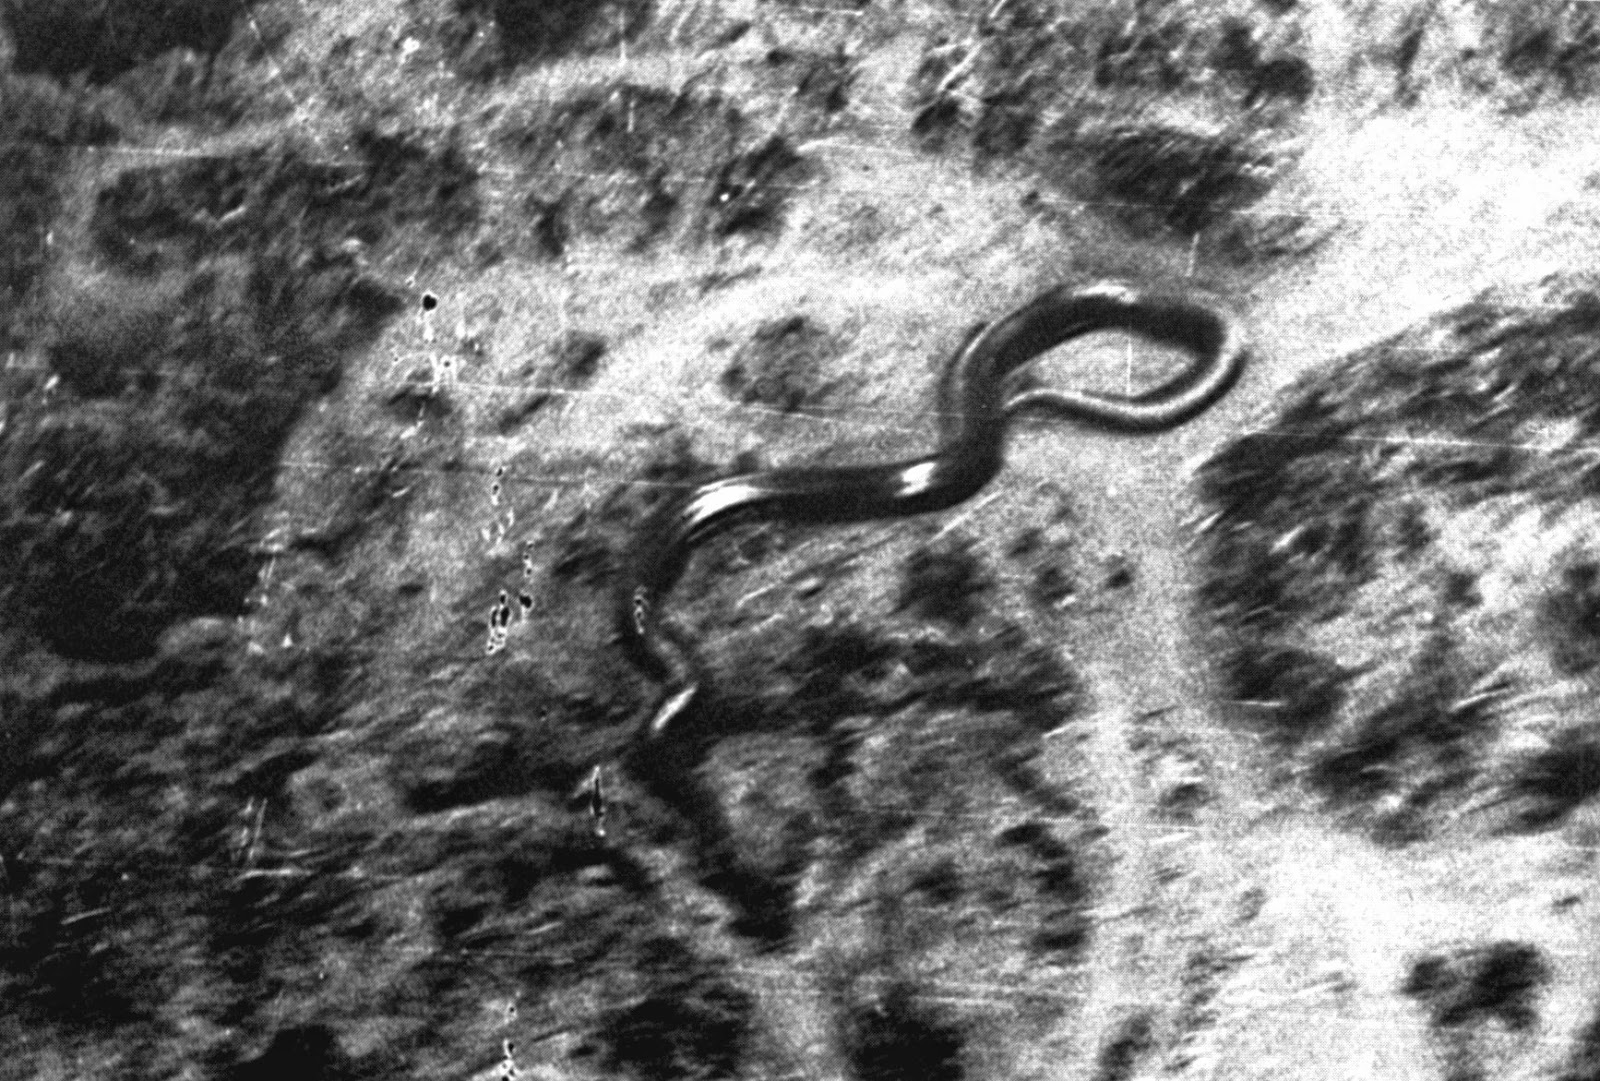 Giant Anacondas And Other Super-Sized Cryptozoological Snakes 33